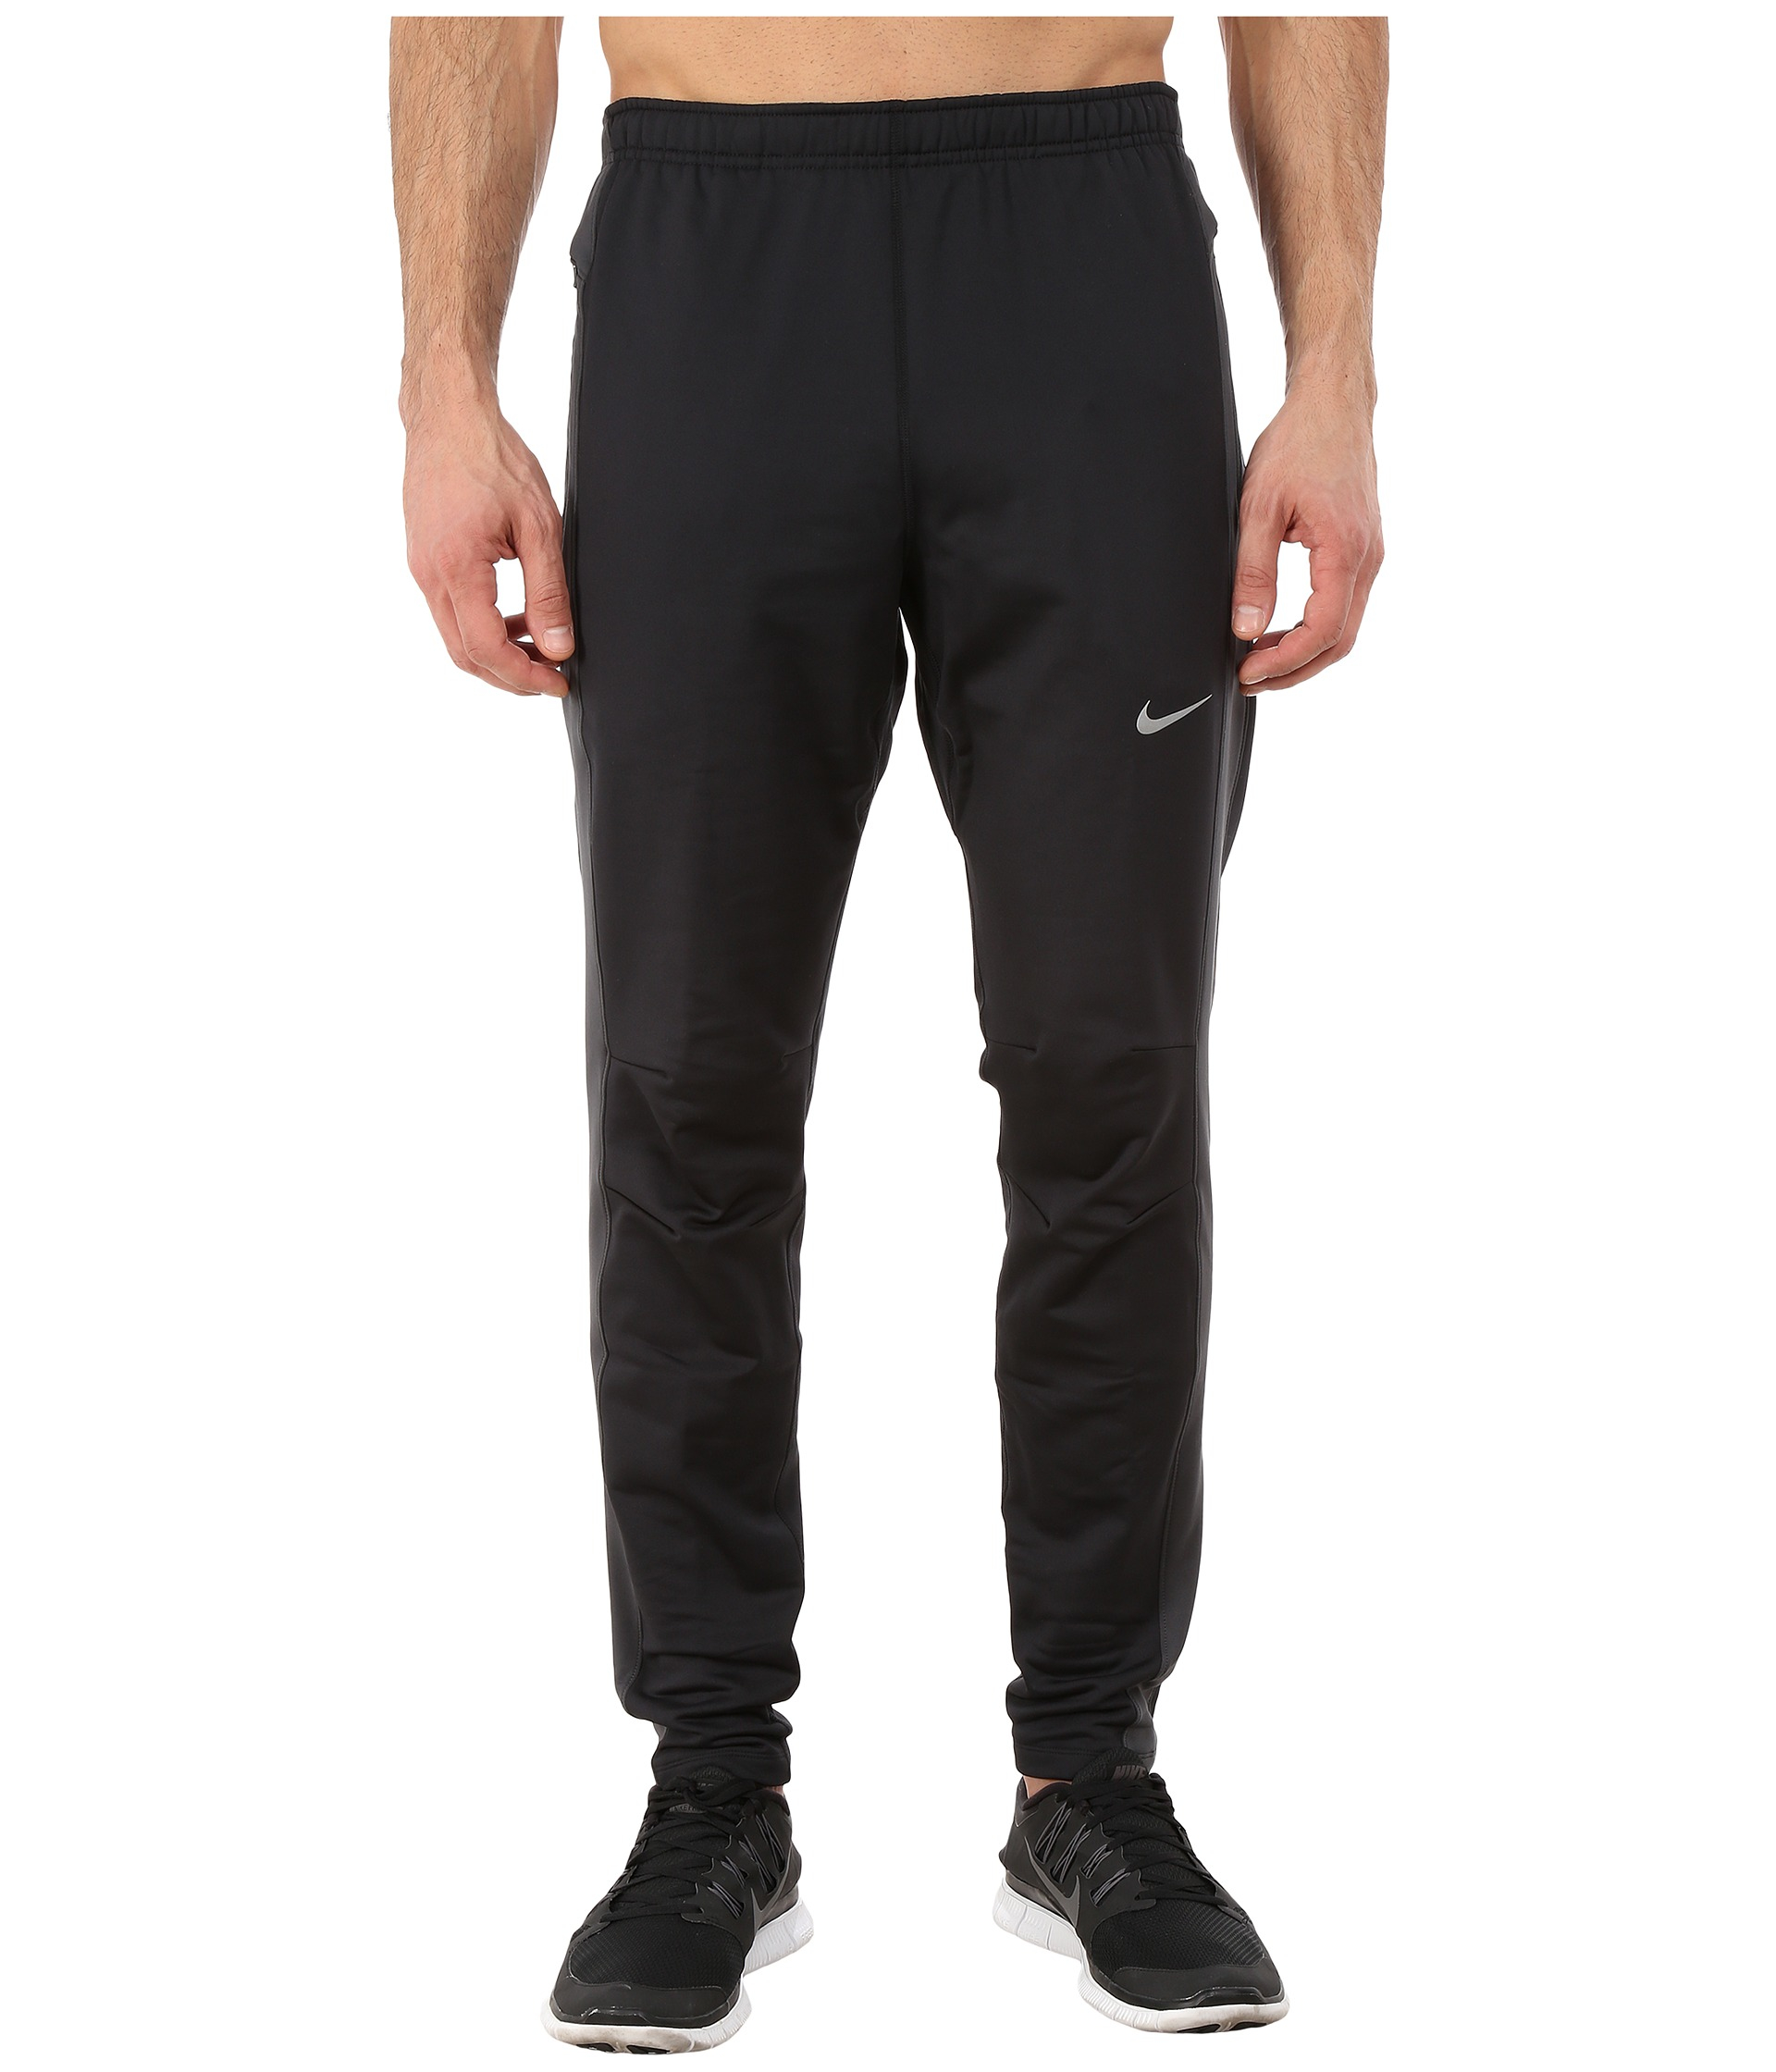 Nike Dri-fit™ Thermal Pants in Black for Men - Lyst